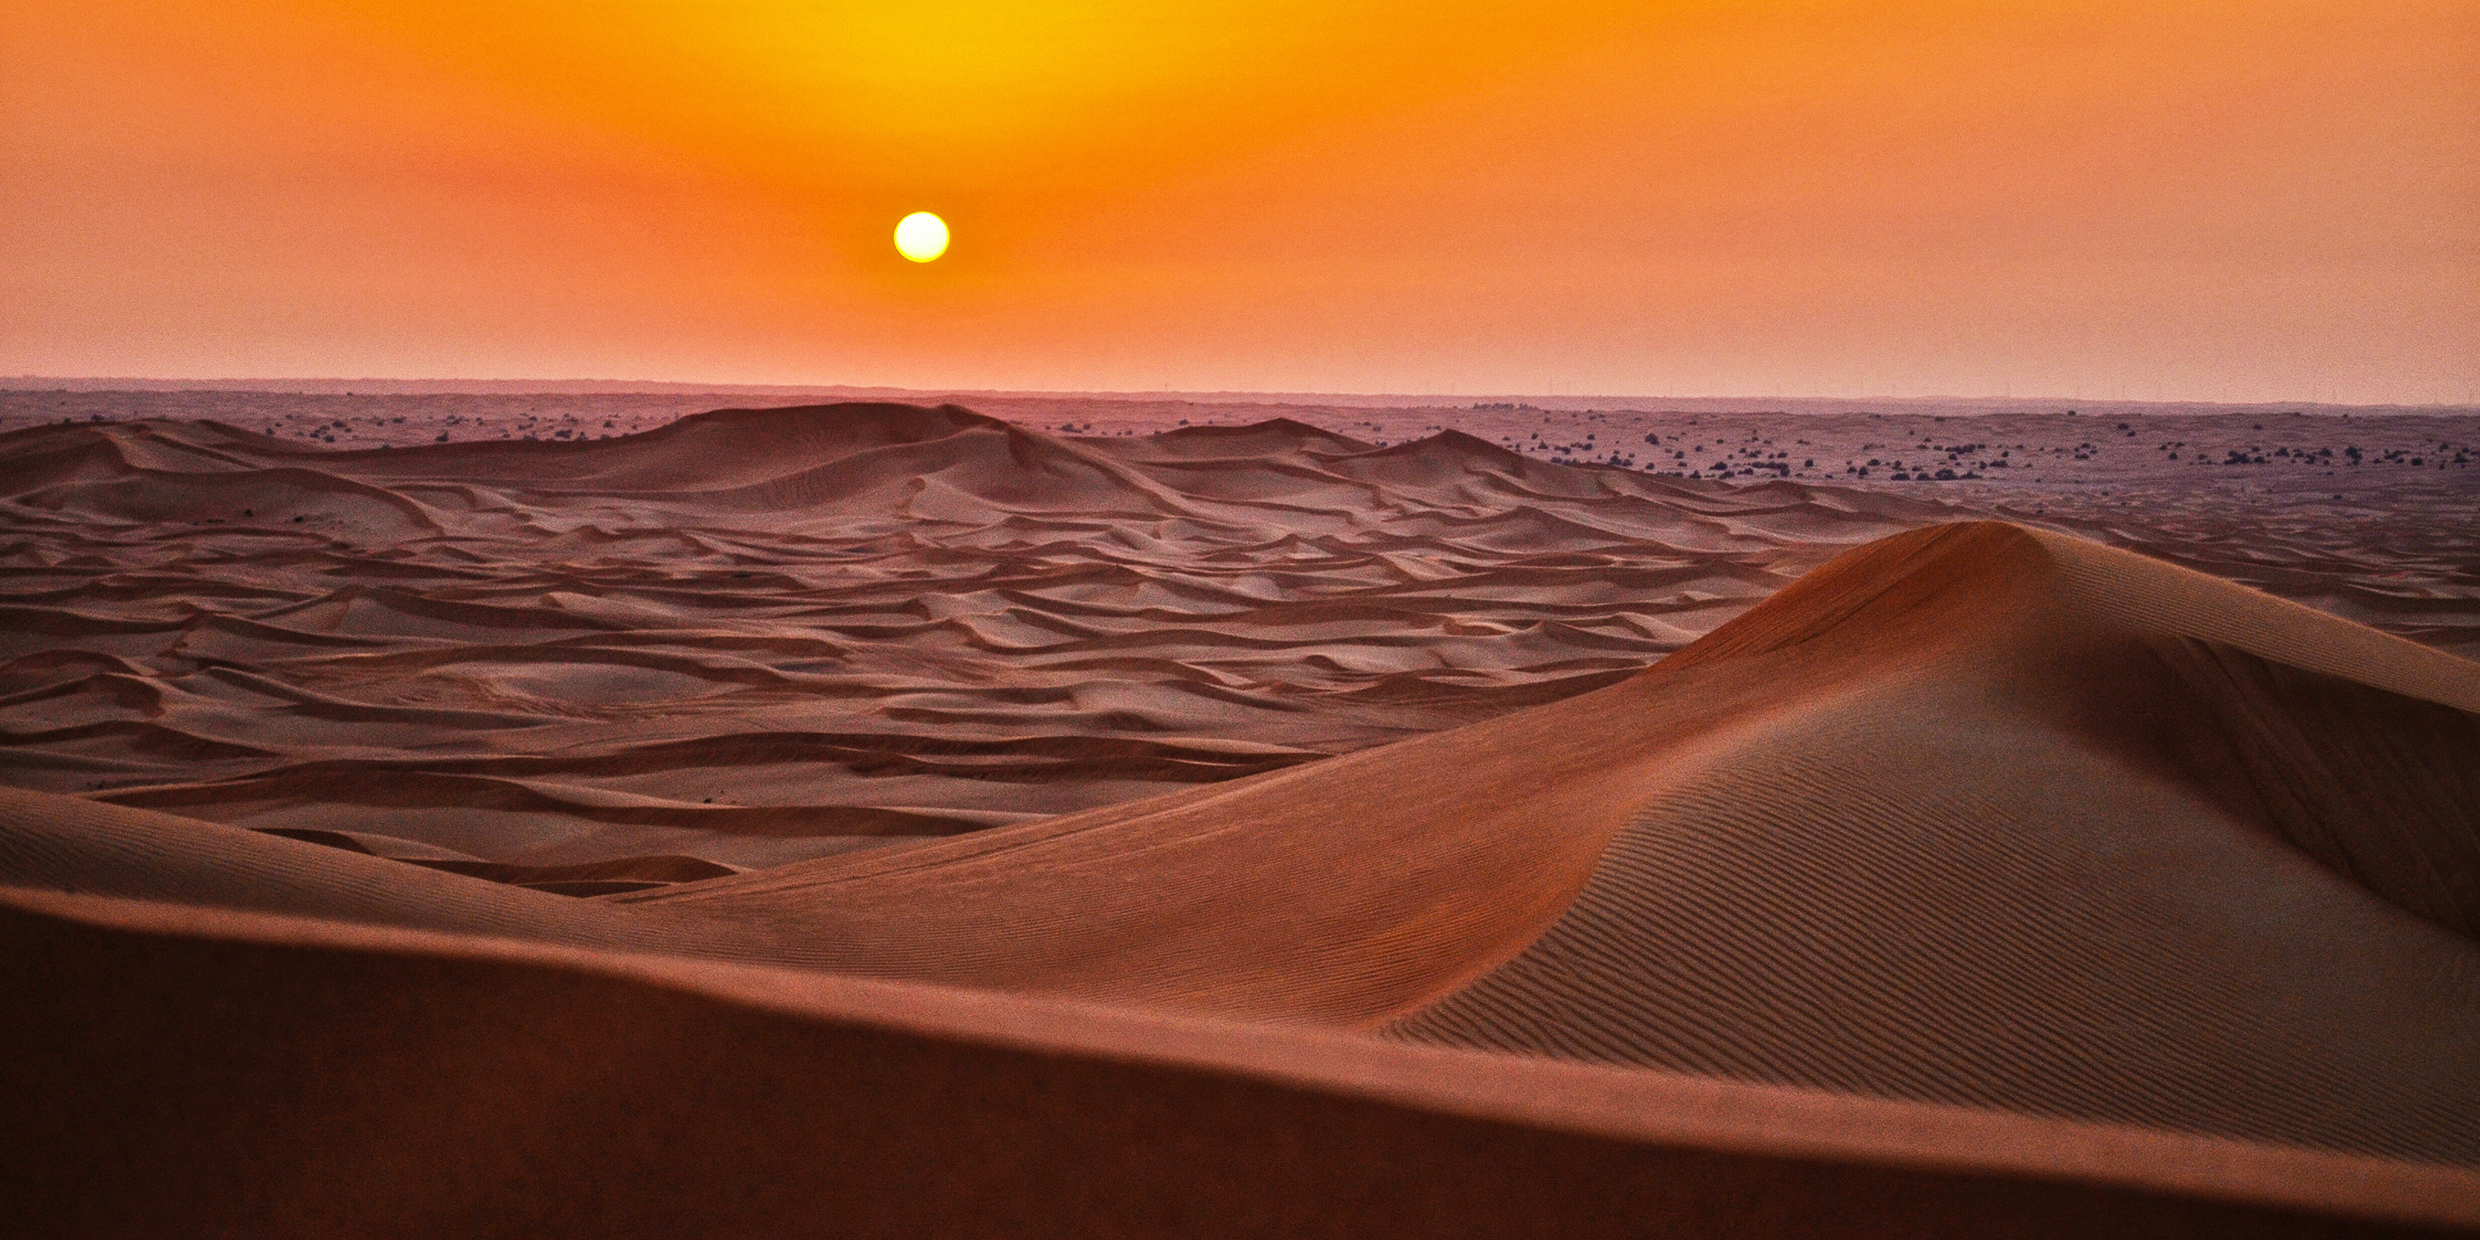 Image of a vast desert